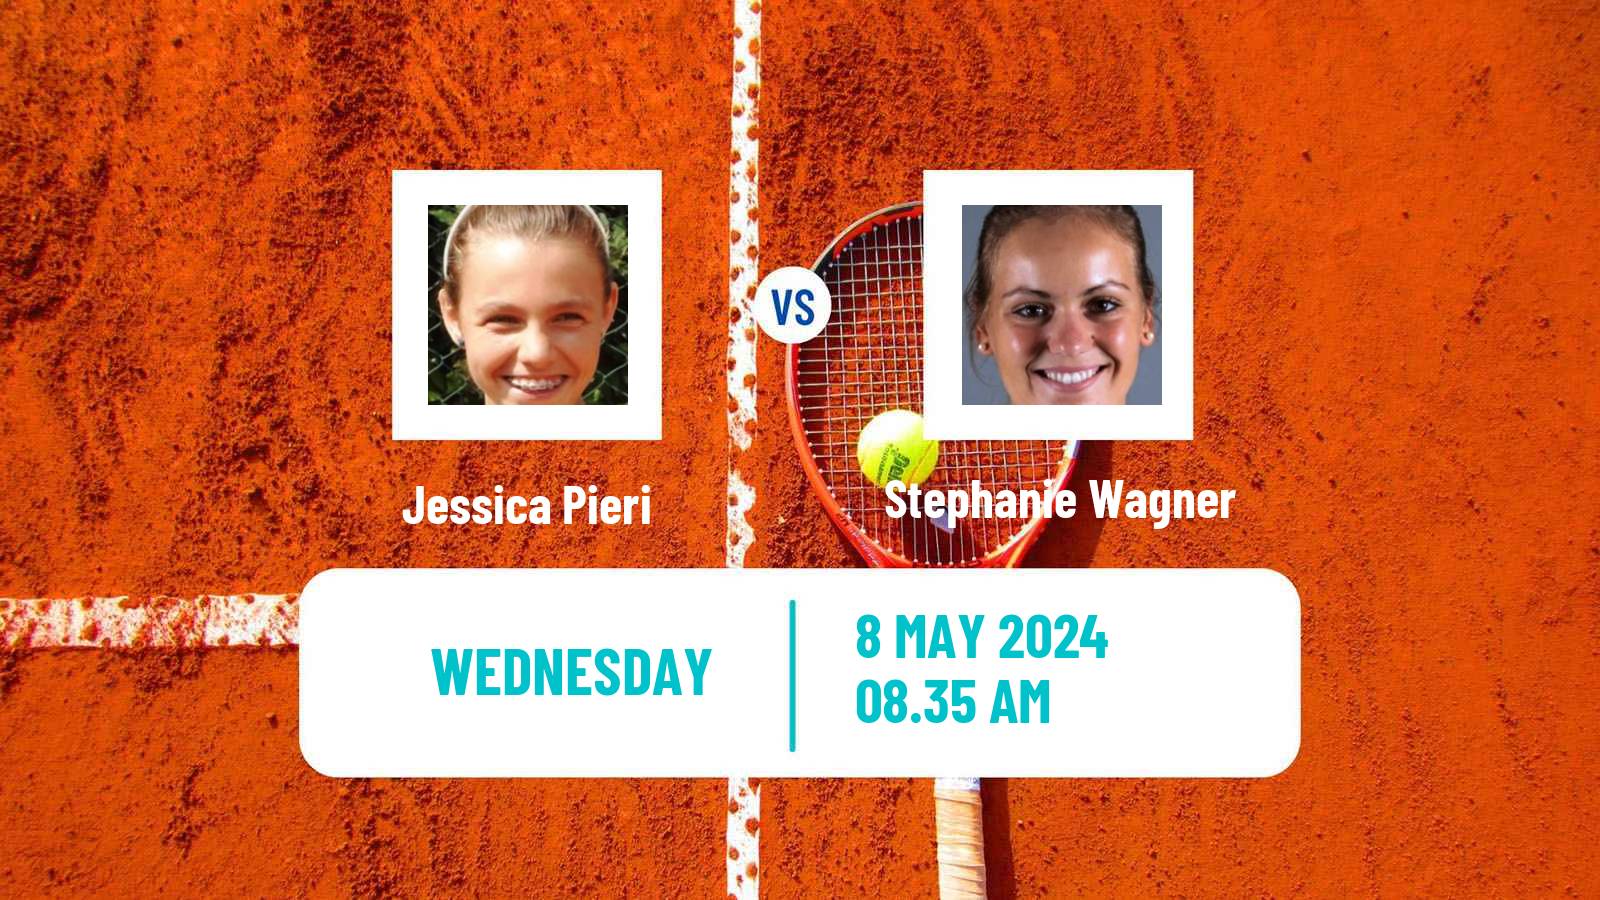 Tennis ITF W75 Prague Women Jessica Pieri - Stephanie Wagner